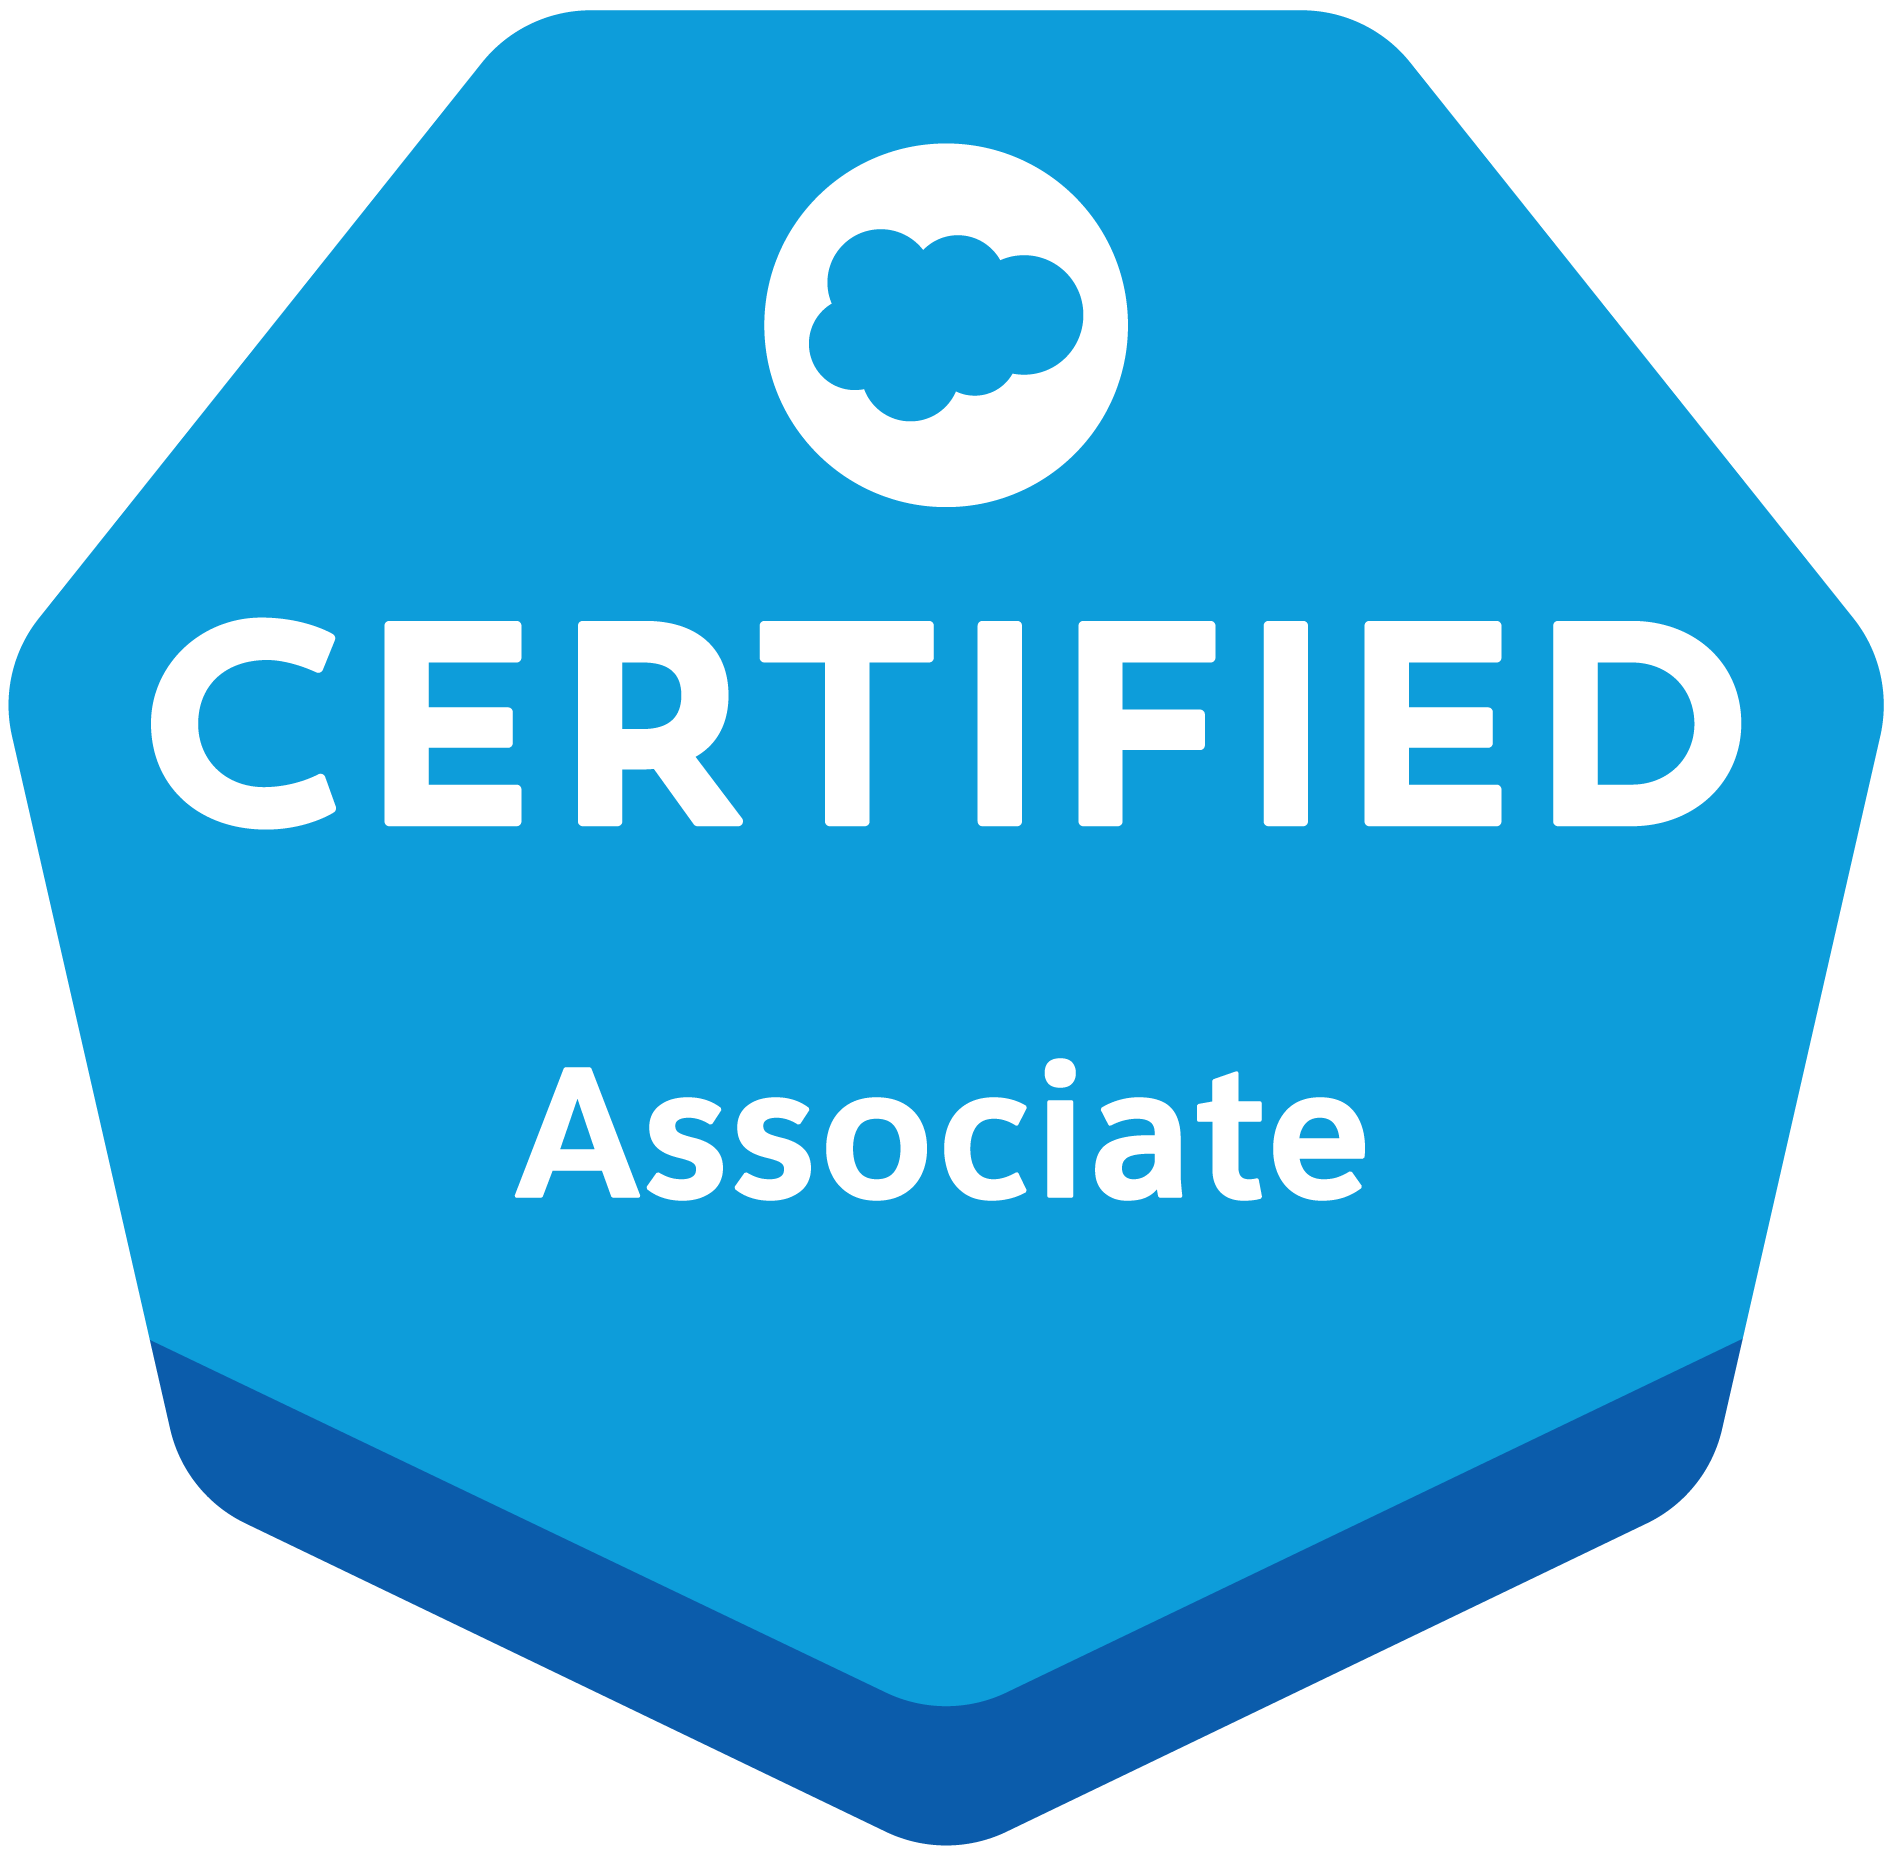 Salesforce Certified Associate